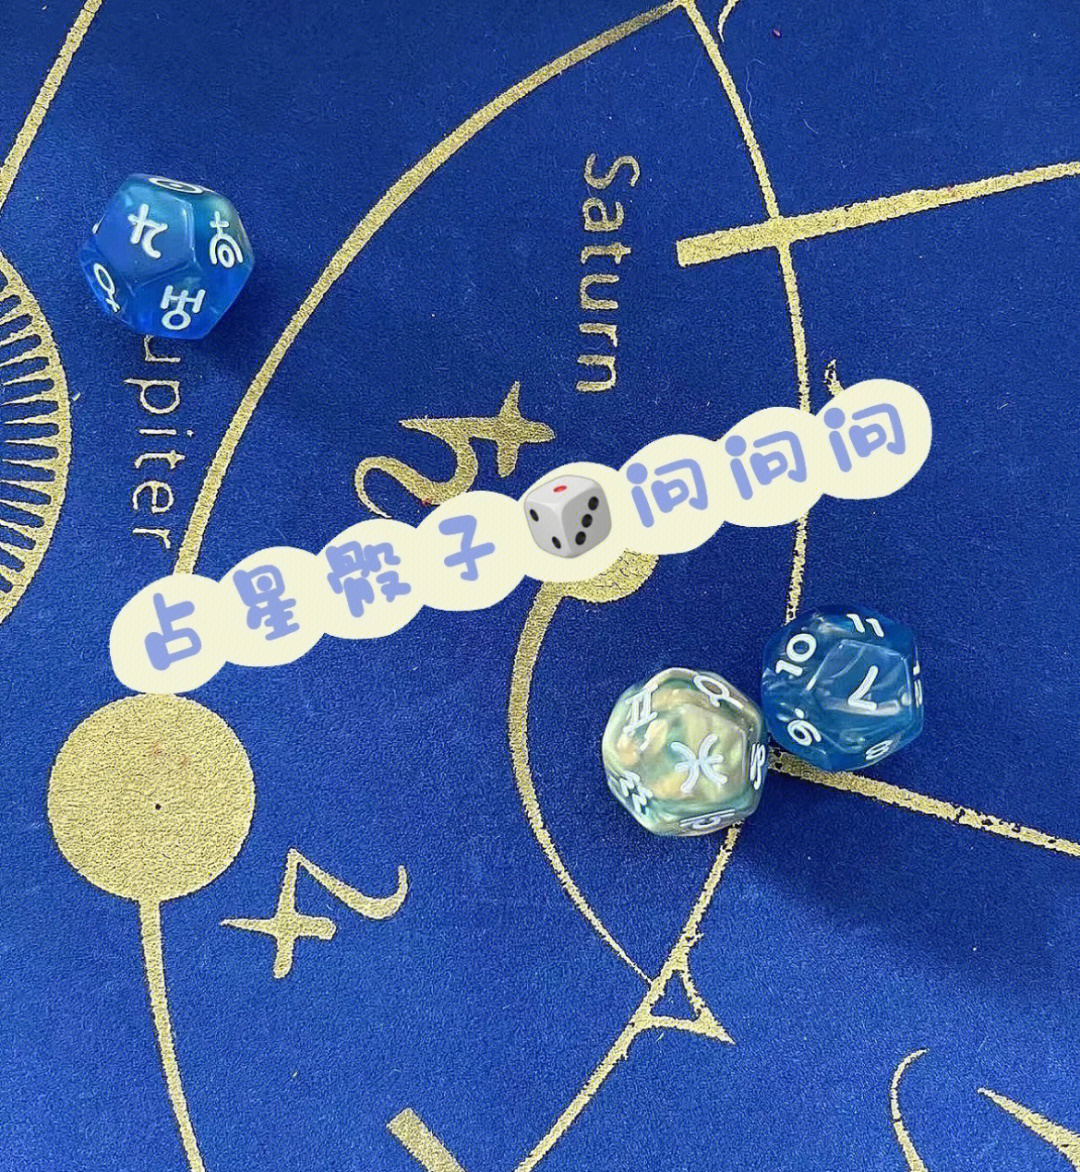 占星骰子星体解读冥王星南北交点